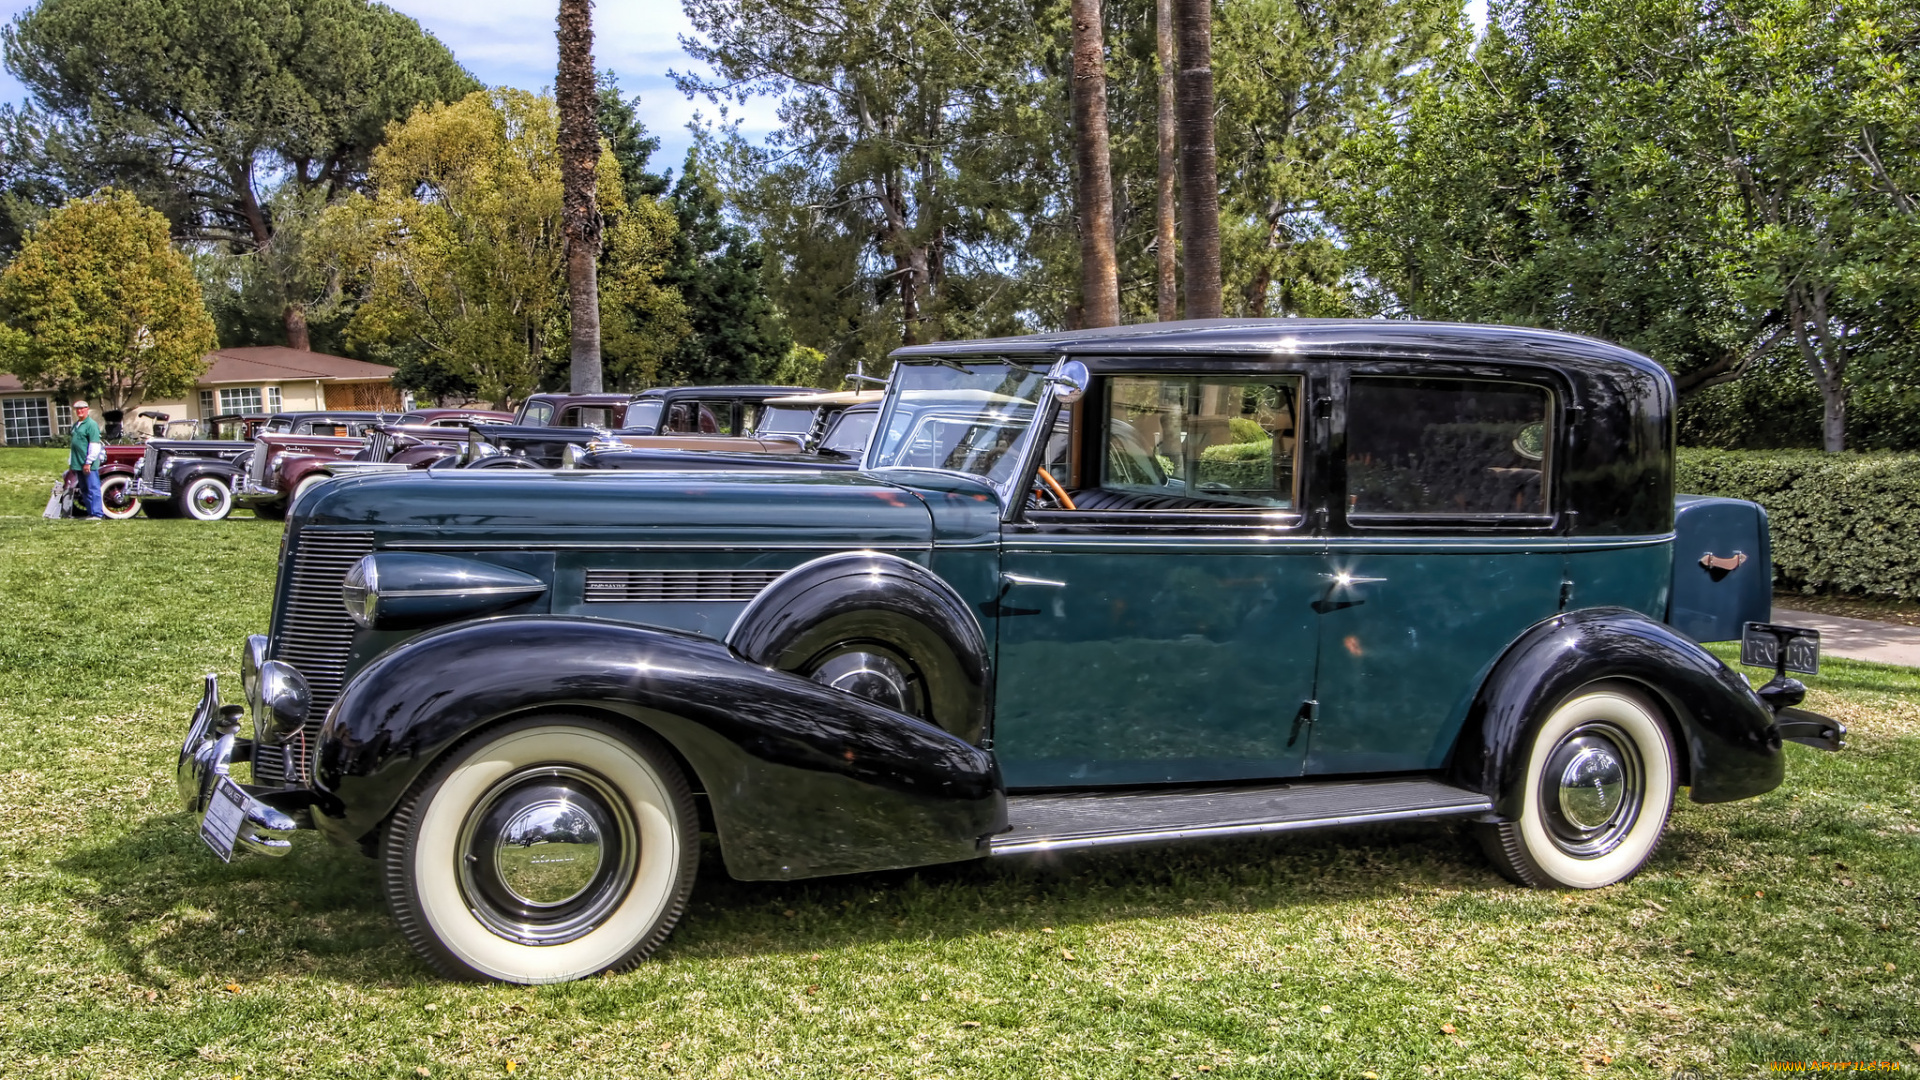 1937, buick, brewster, limousine, автомобили, выставки, и, уличные, фото, автошоу, выставка